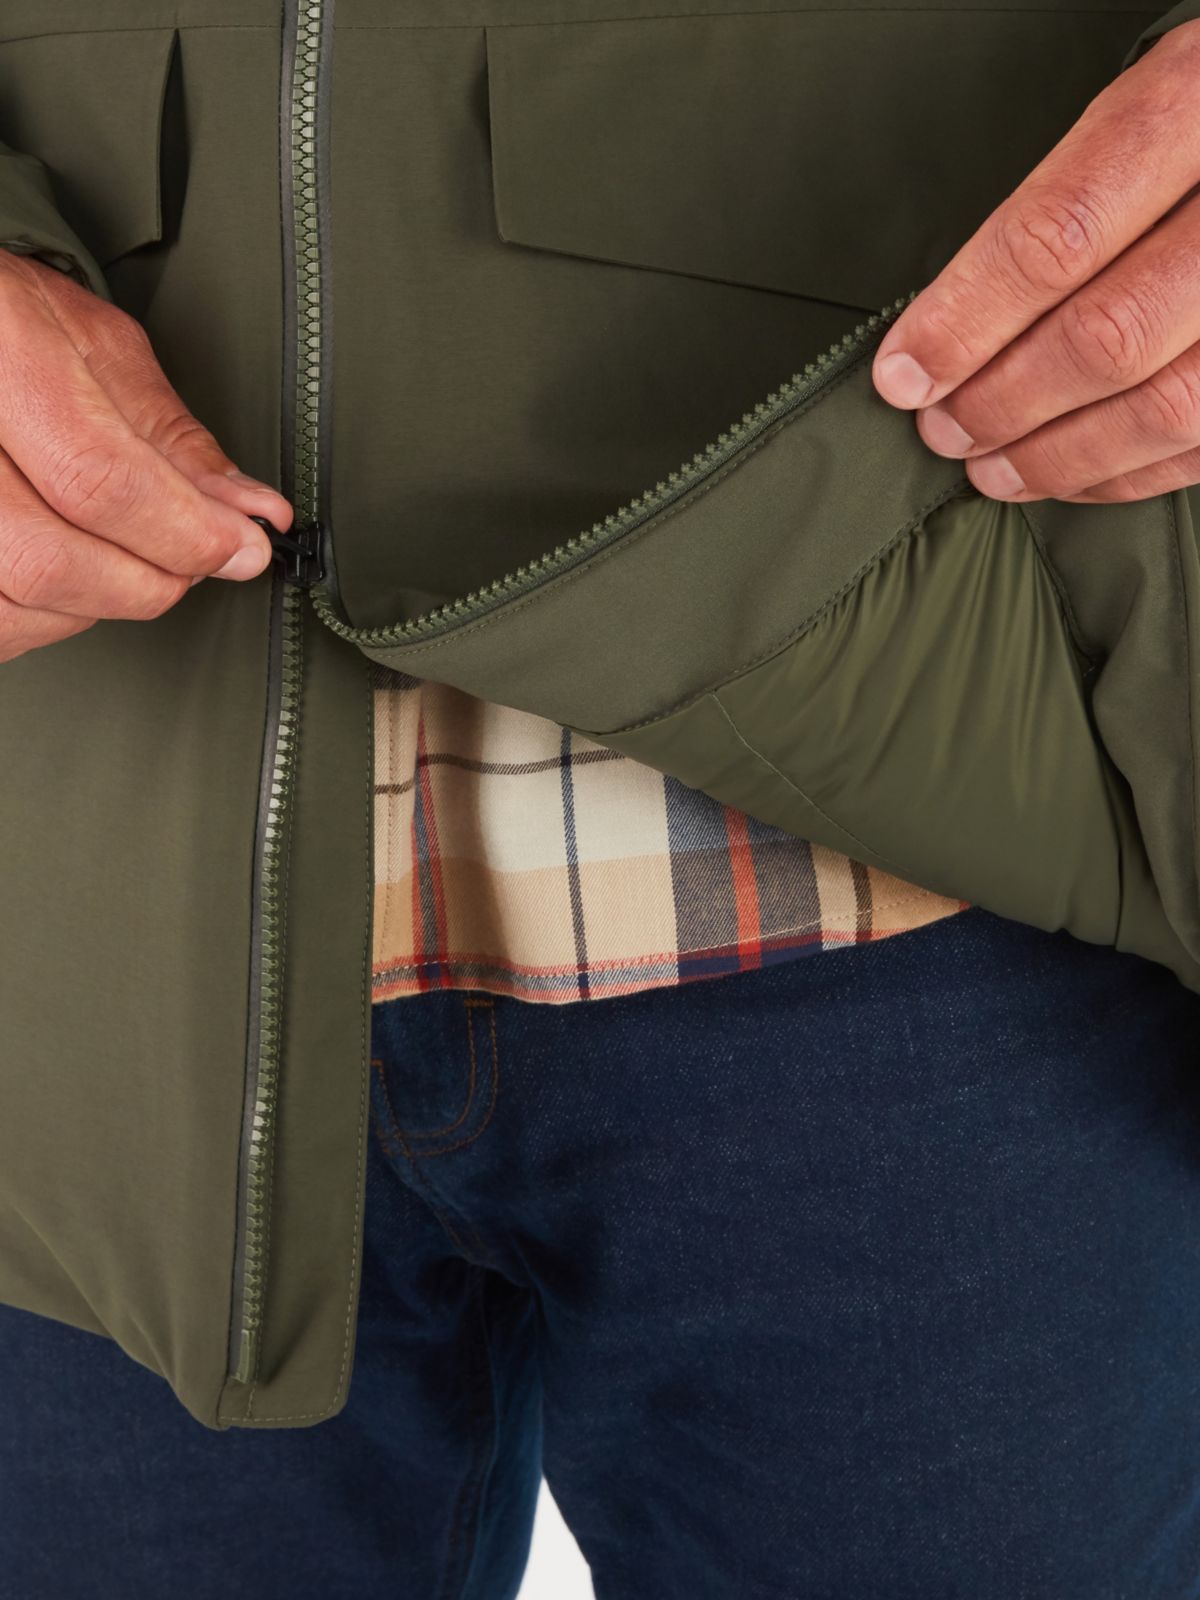 insulated jacker zipper closeup